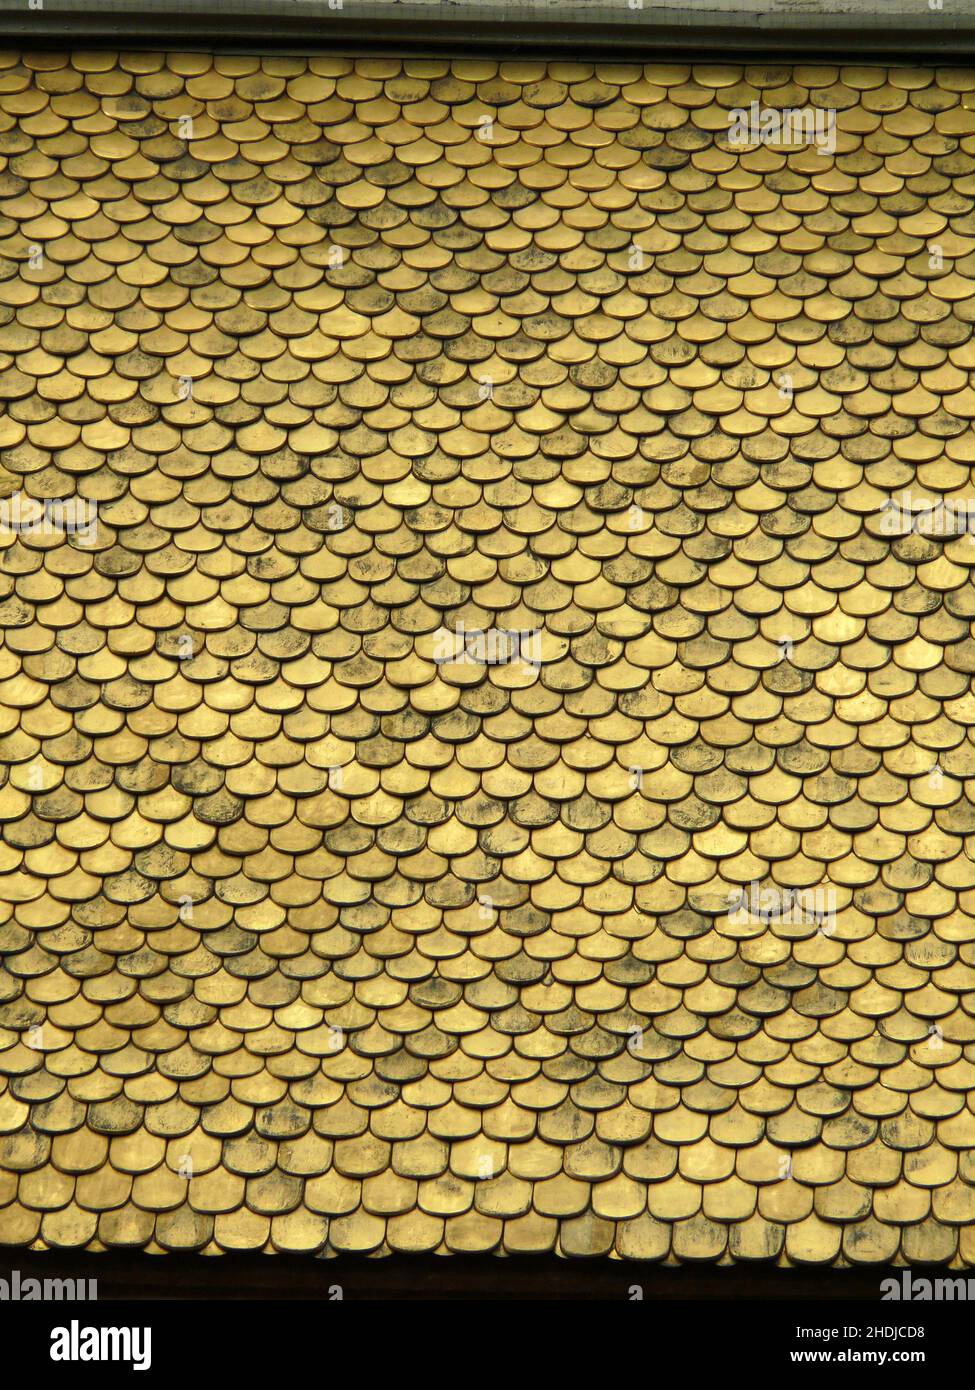 goldenes Dach, Kupferschindeln, goldene Dächer, Kupferschindeln Stockfoto